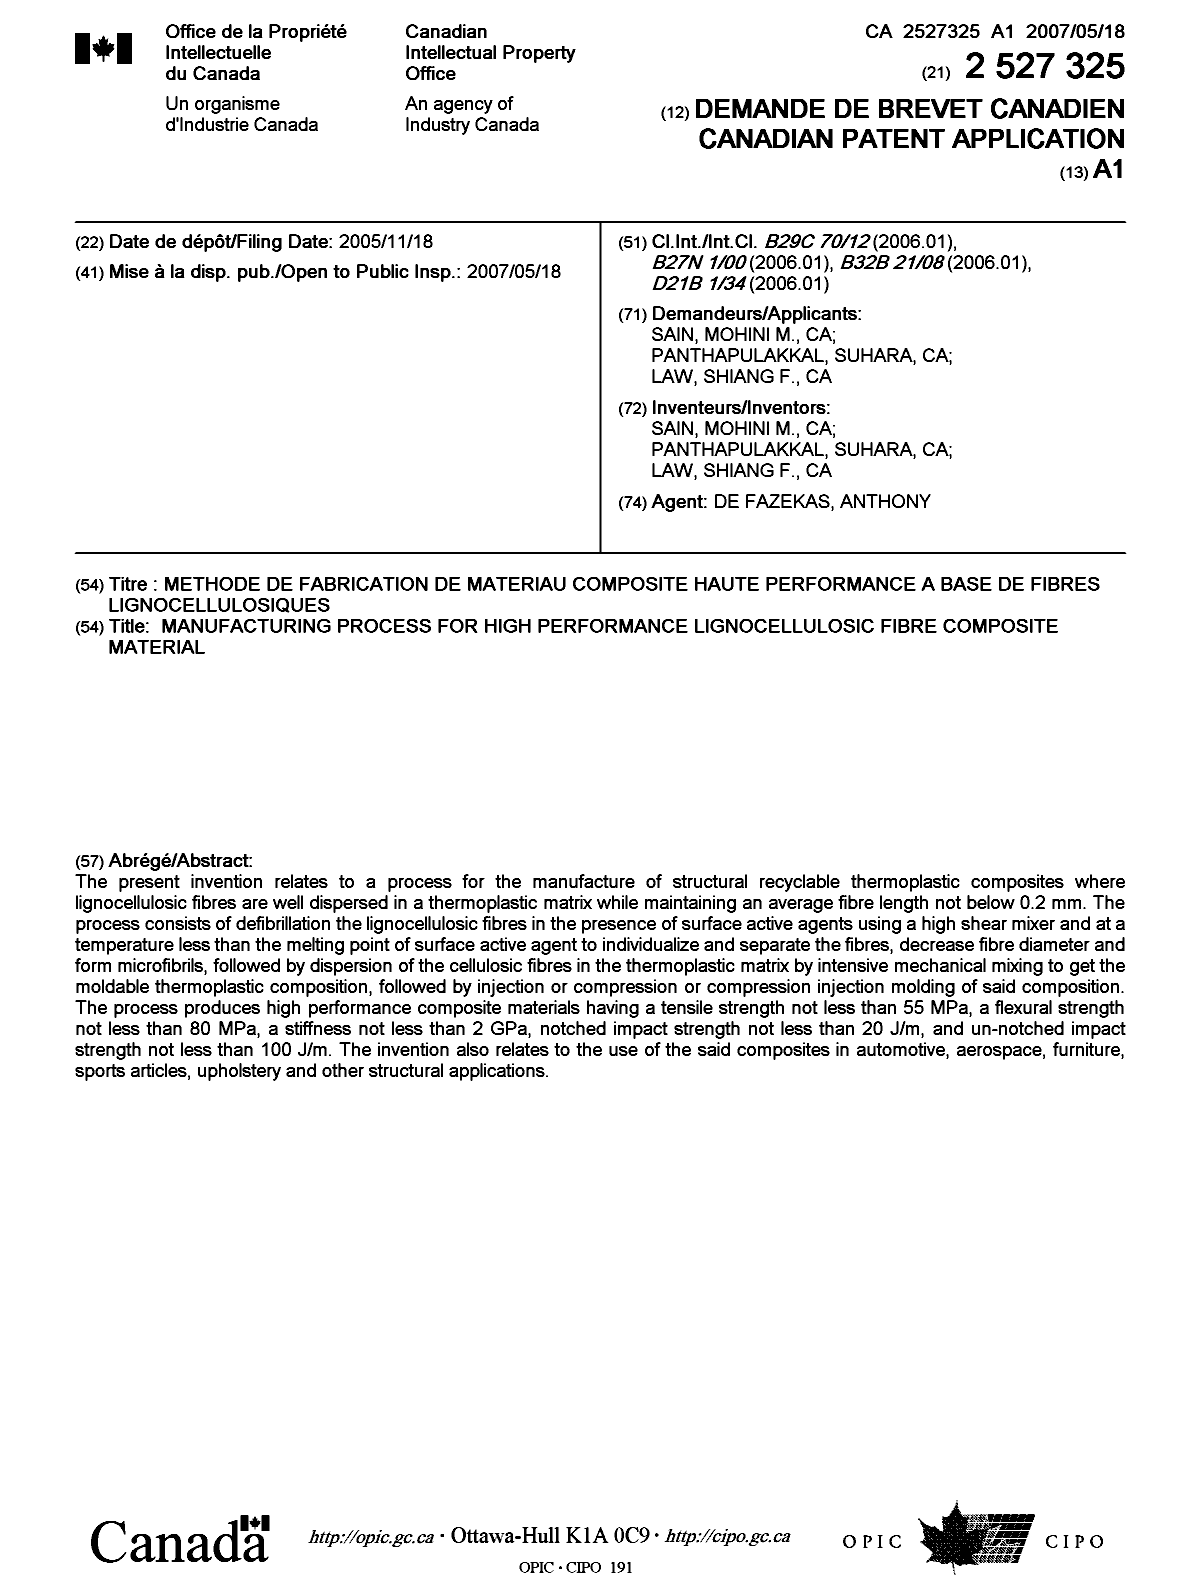 Document de brevet canadien 2527325. Page couverture 20061210. Image 1 de 1